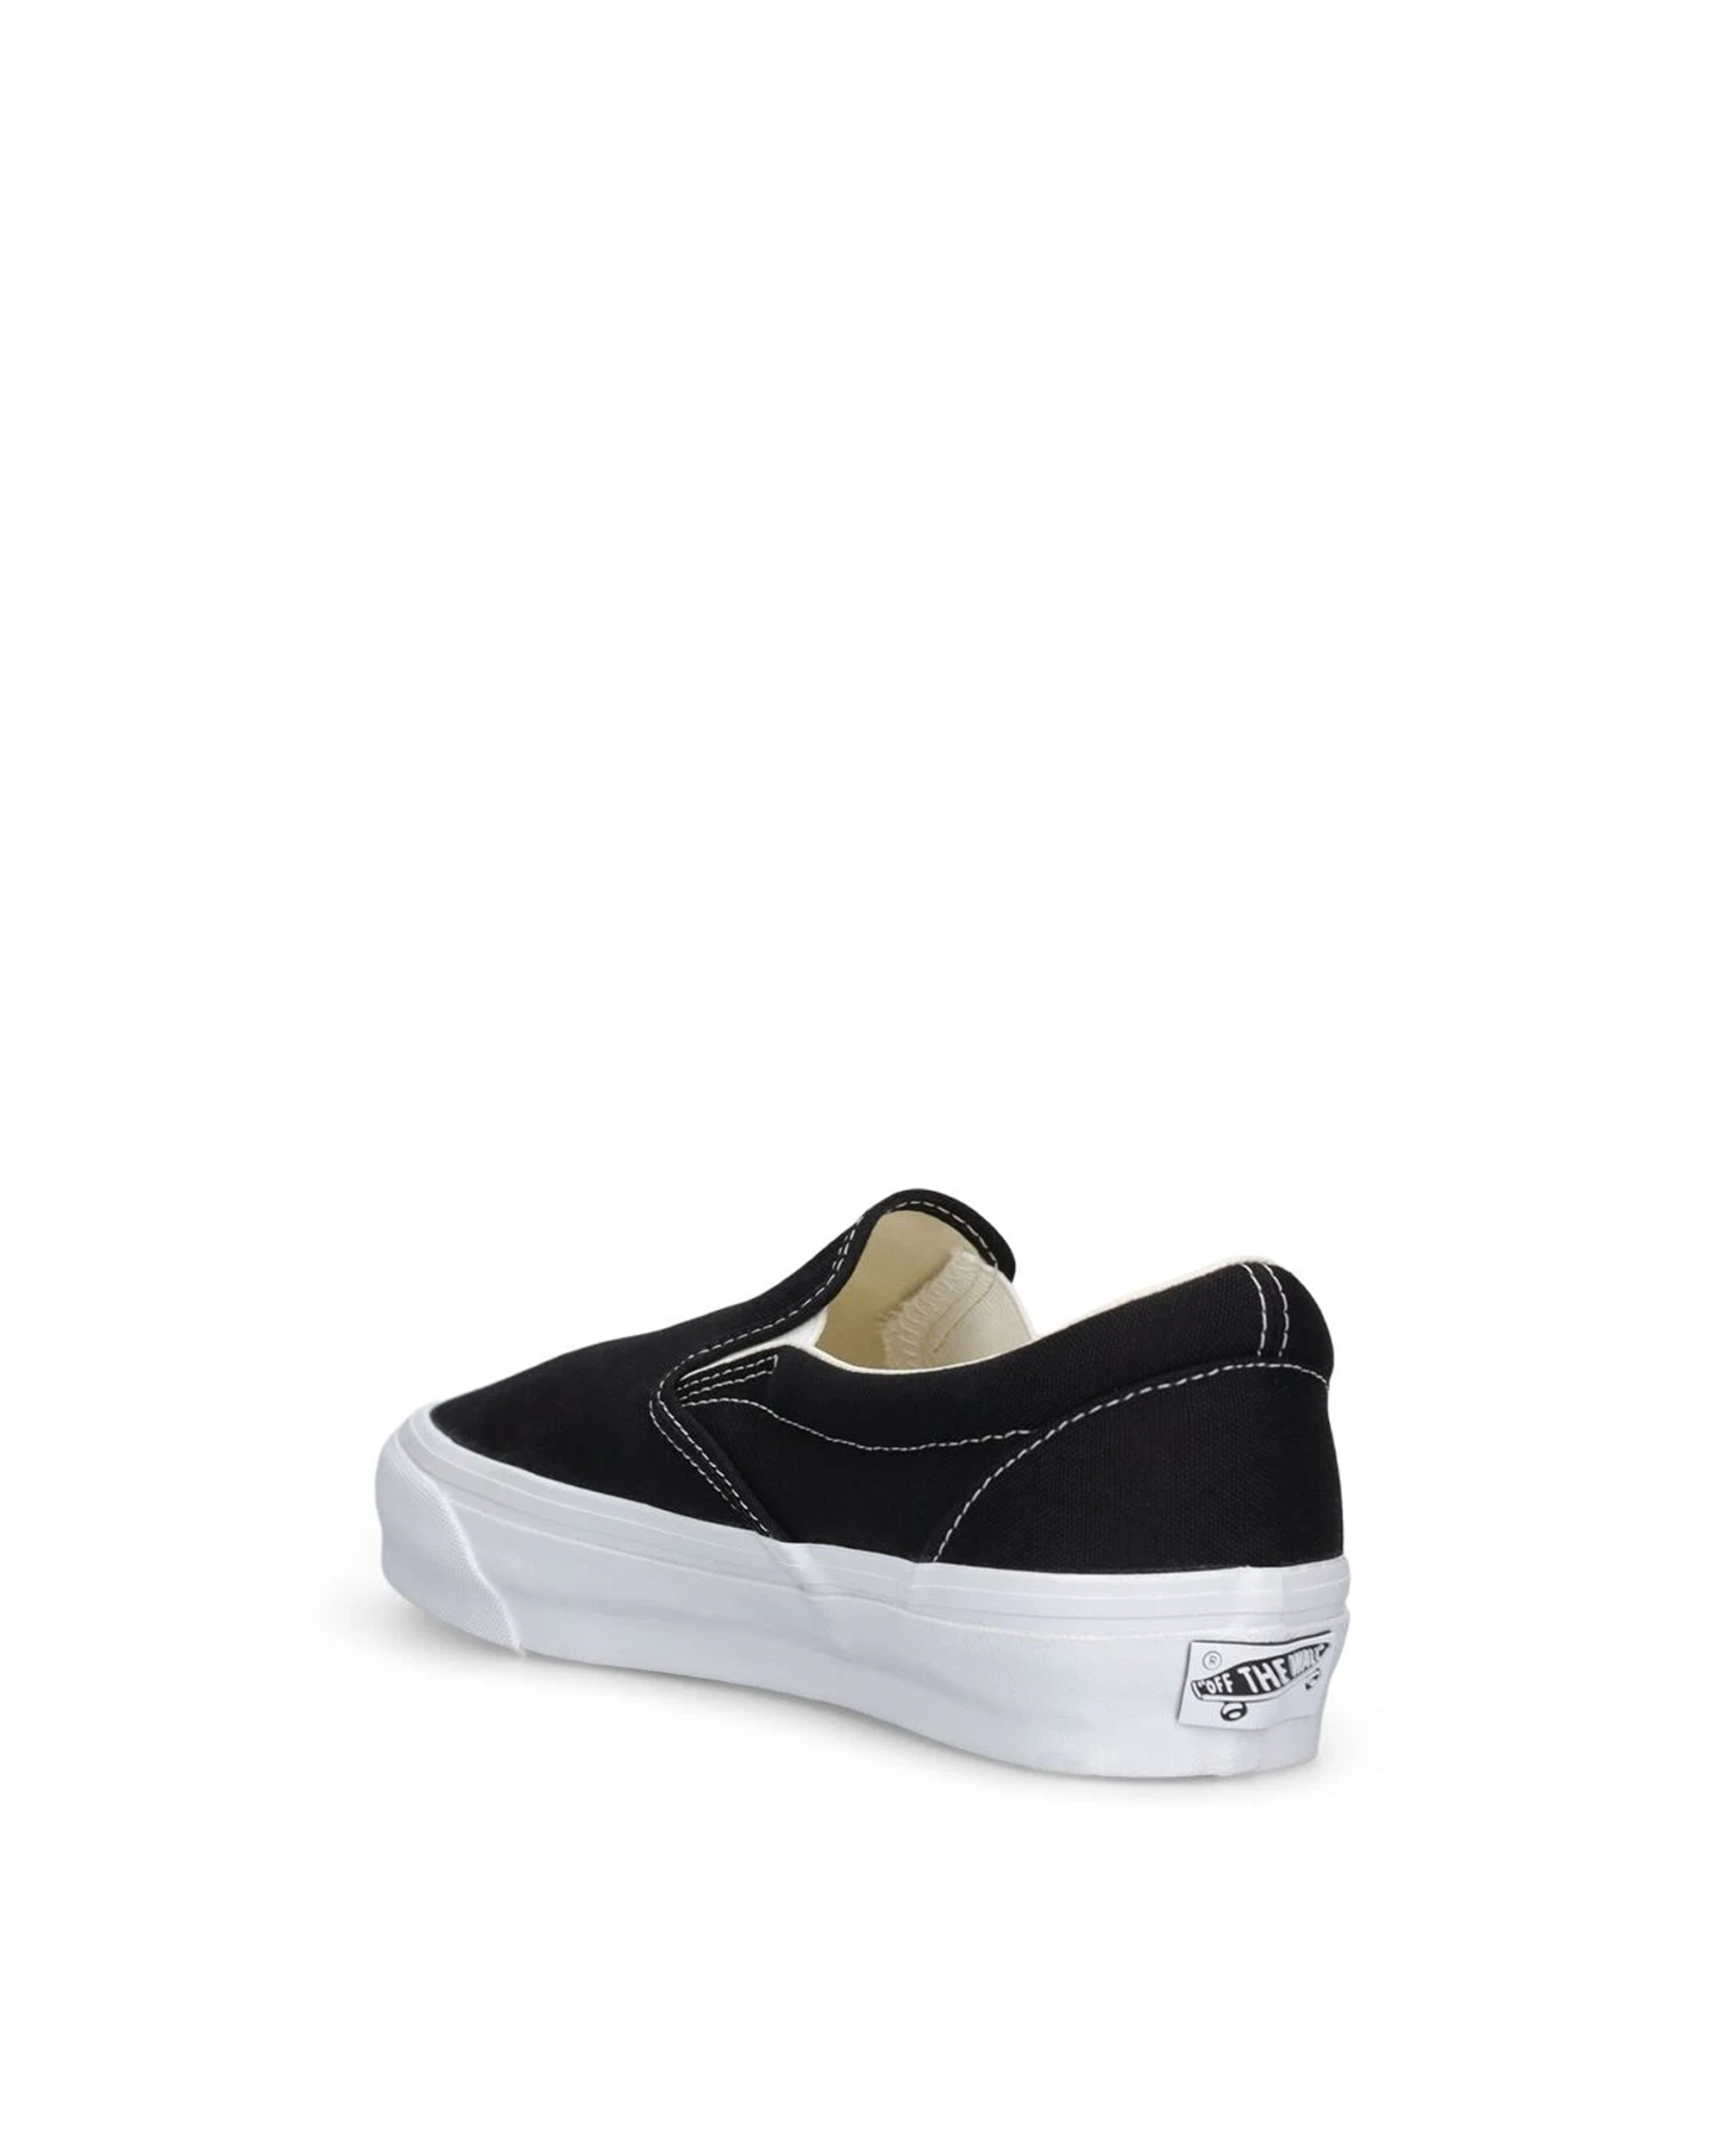 Shop Vans Sneaker Slip-on Reissue 98 In Lx Black/white